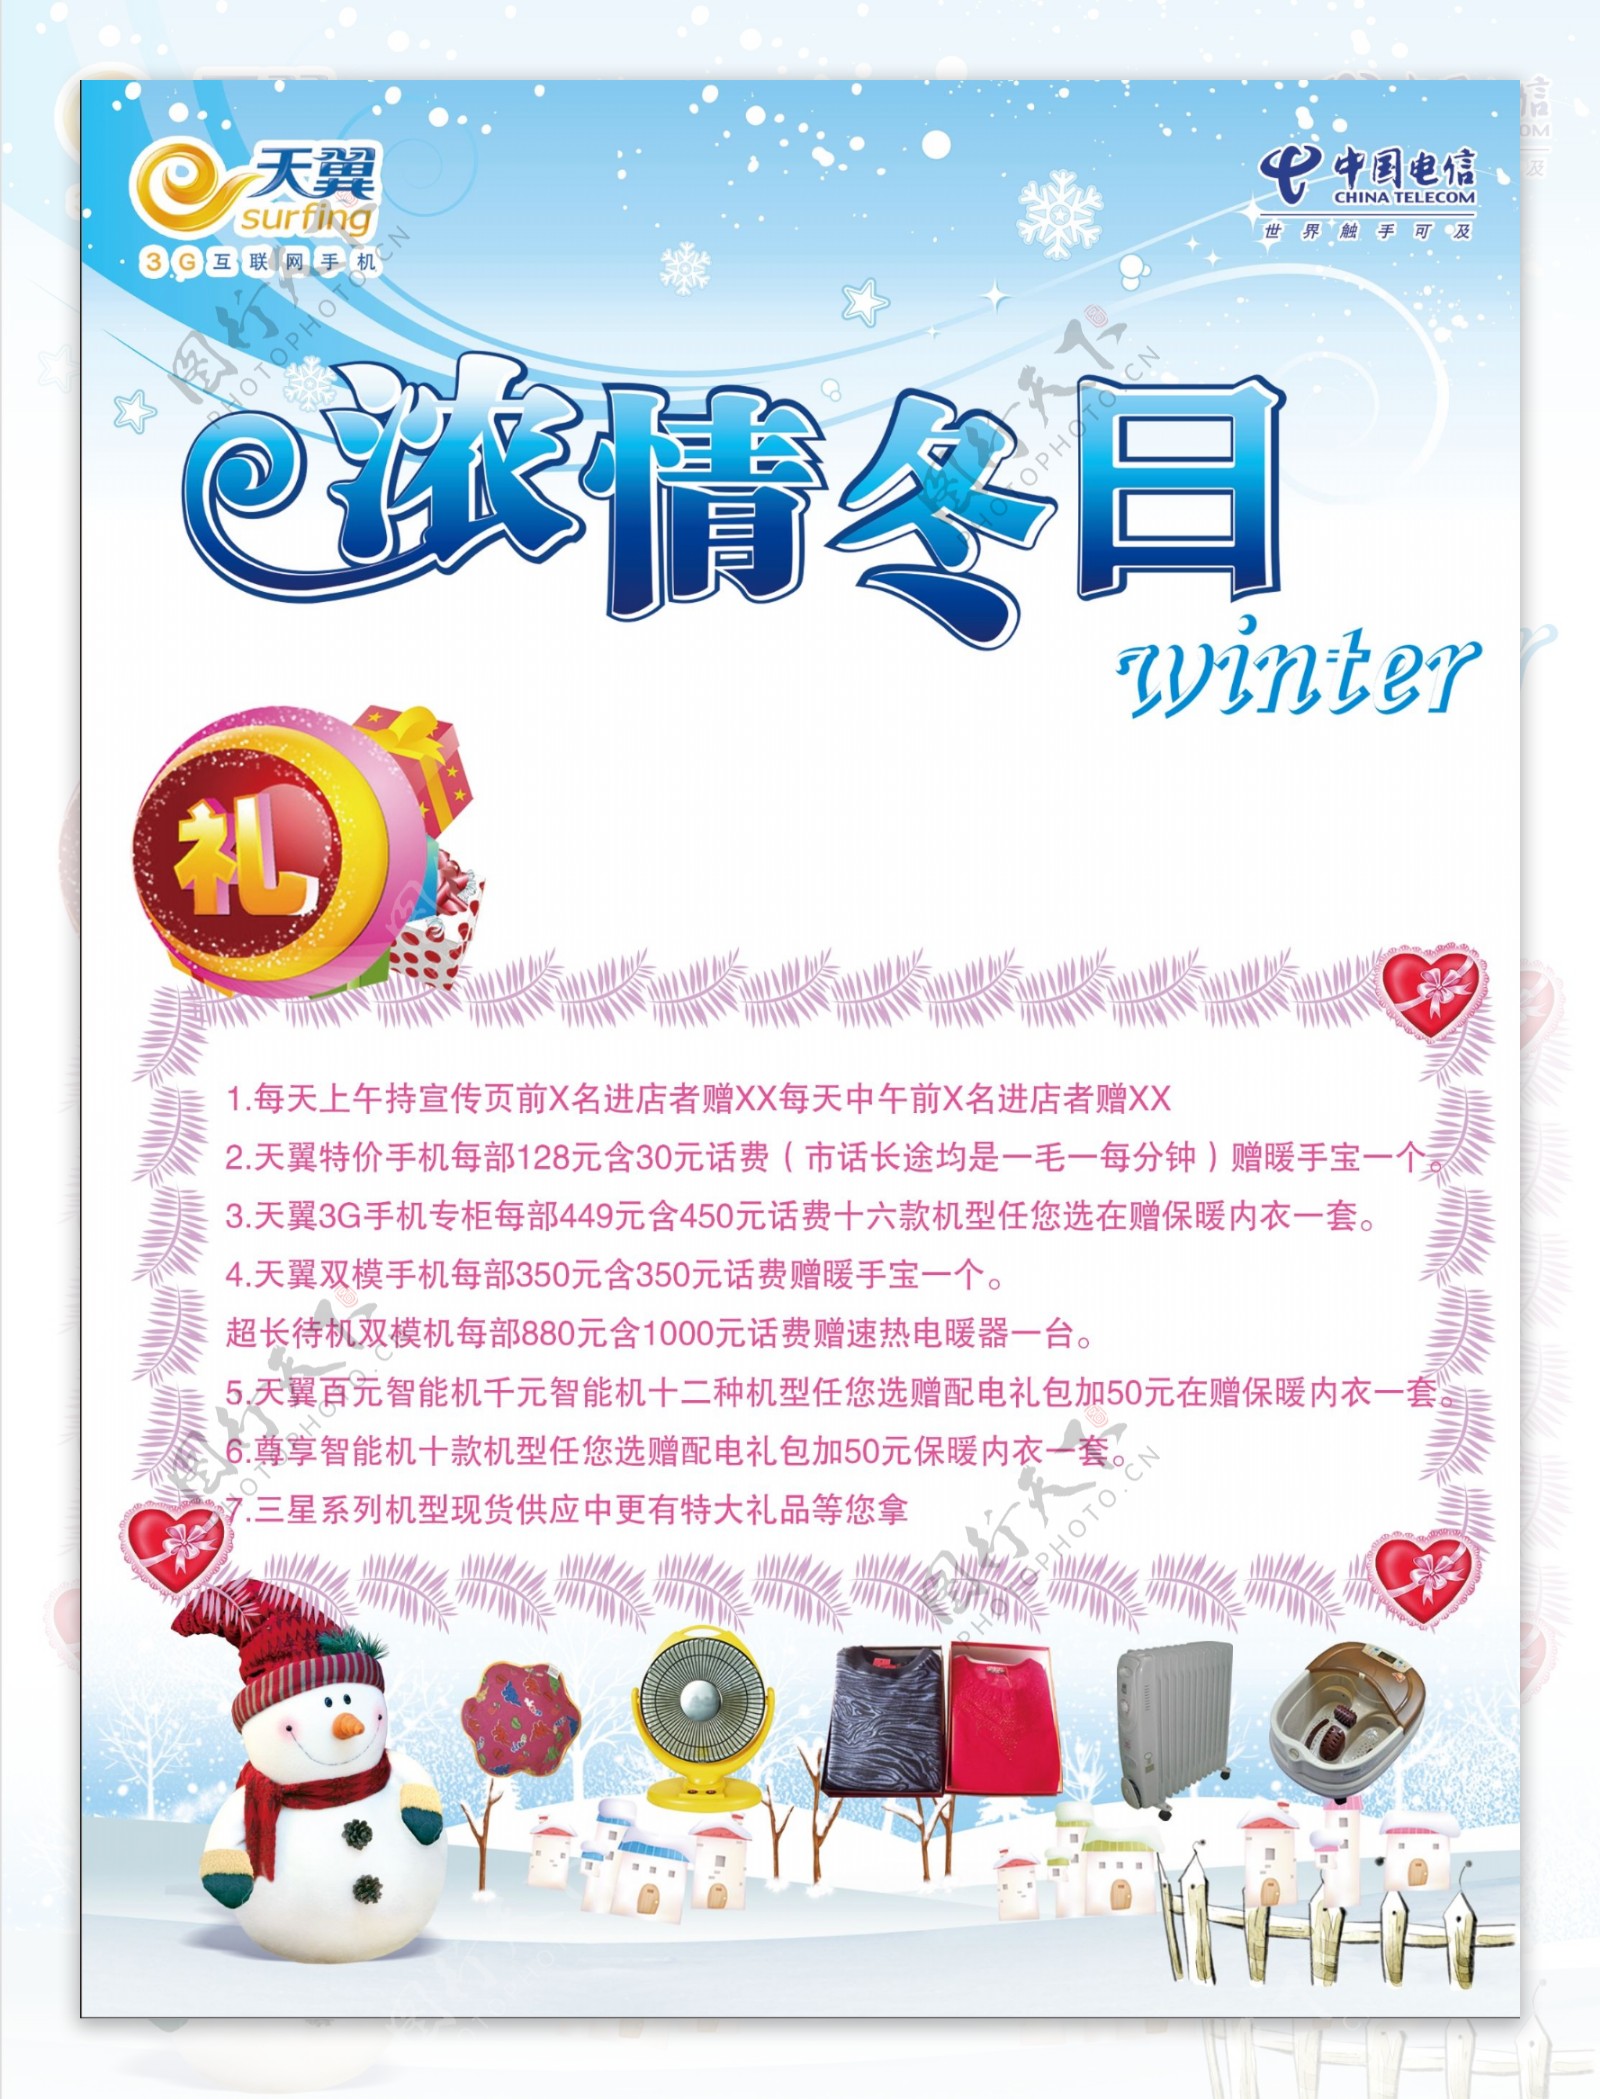 中国电信天翼3g手机浓情冬日宣传图片